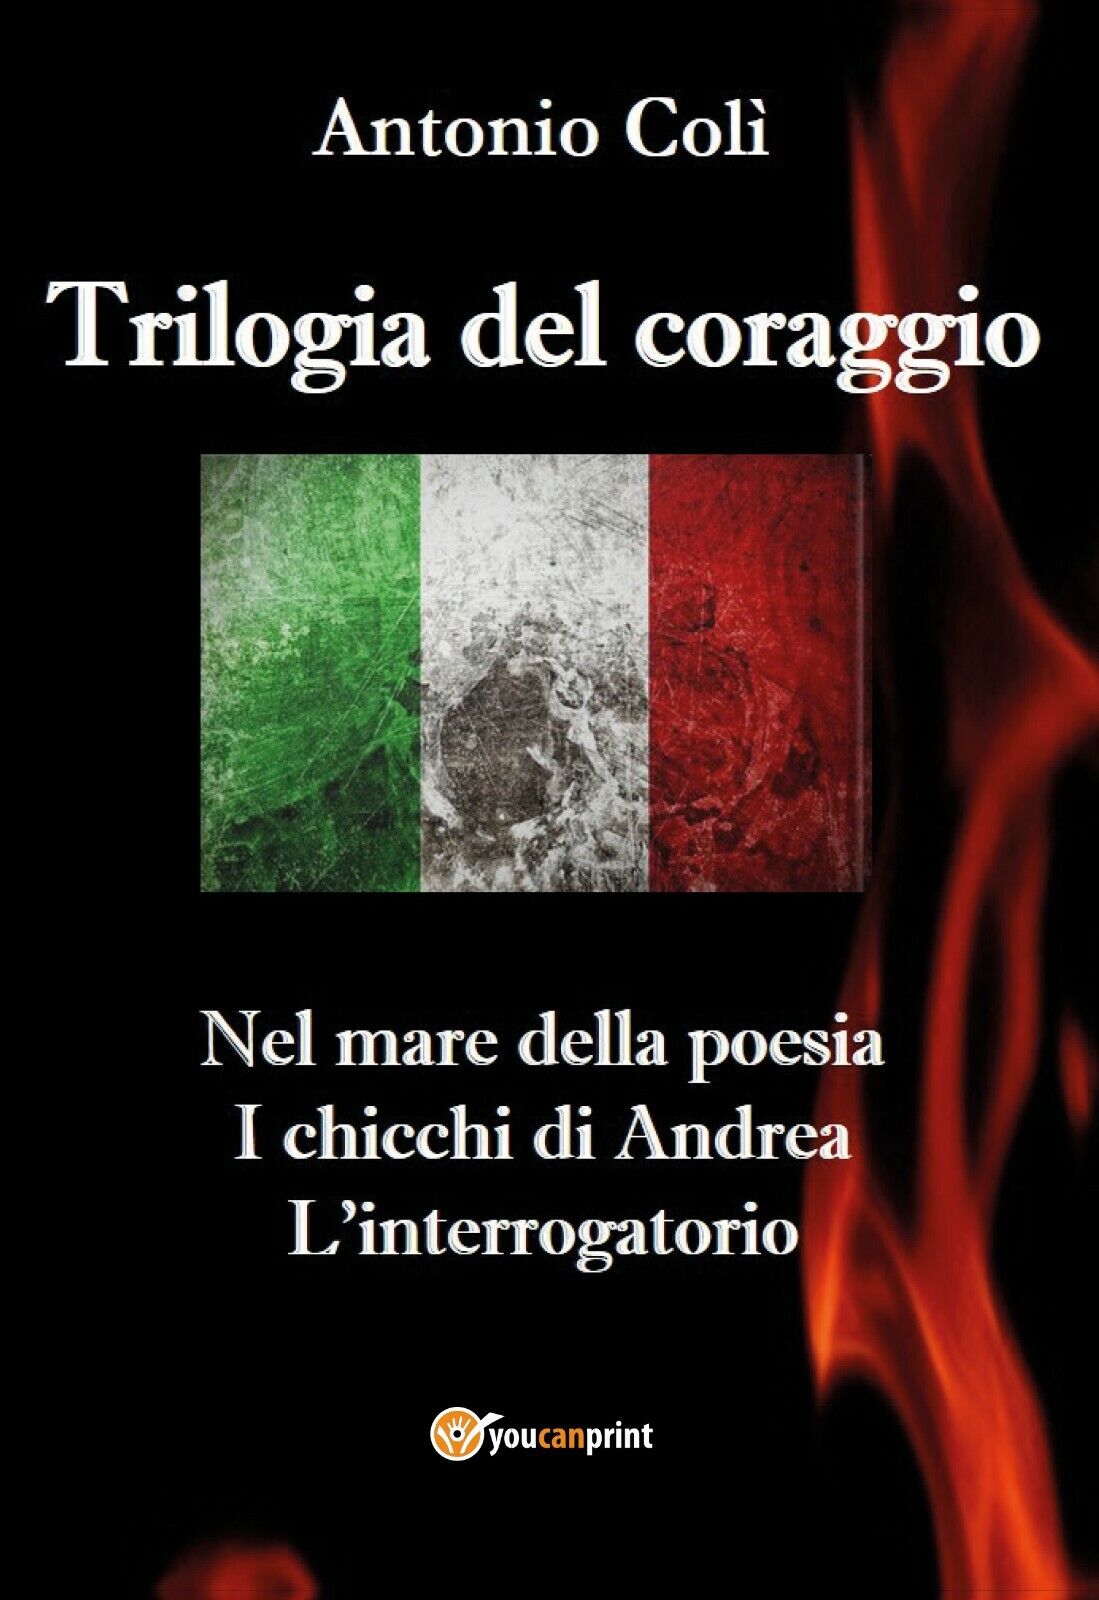  Trilogia del coraggio -Antonio Col?,  2019,  Youcanprint